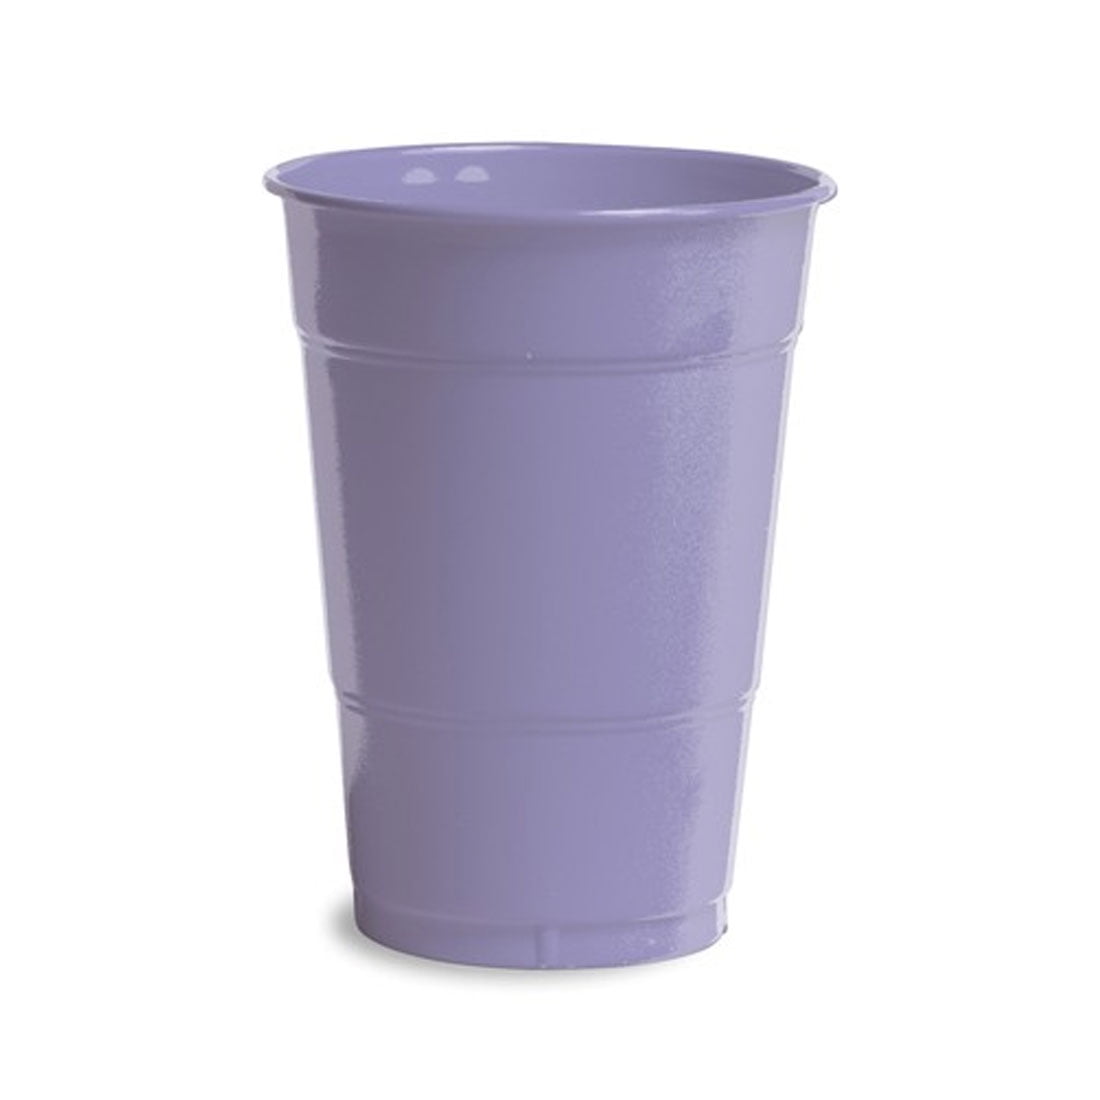 Luscious Lavender 16oz Plastic Cups 20ct